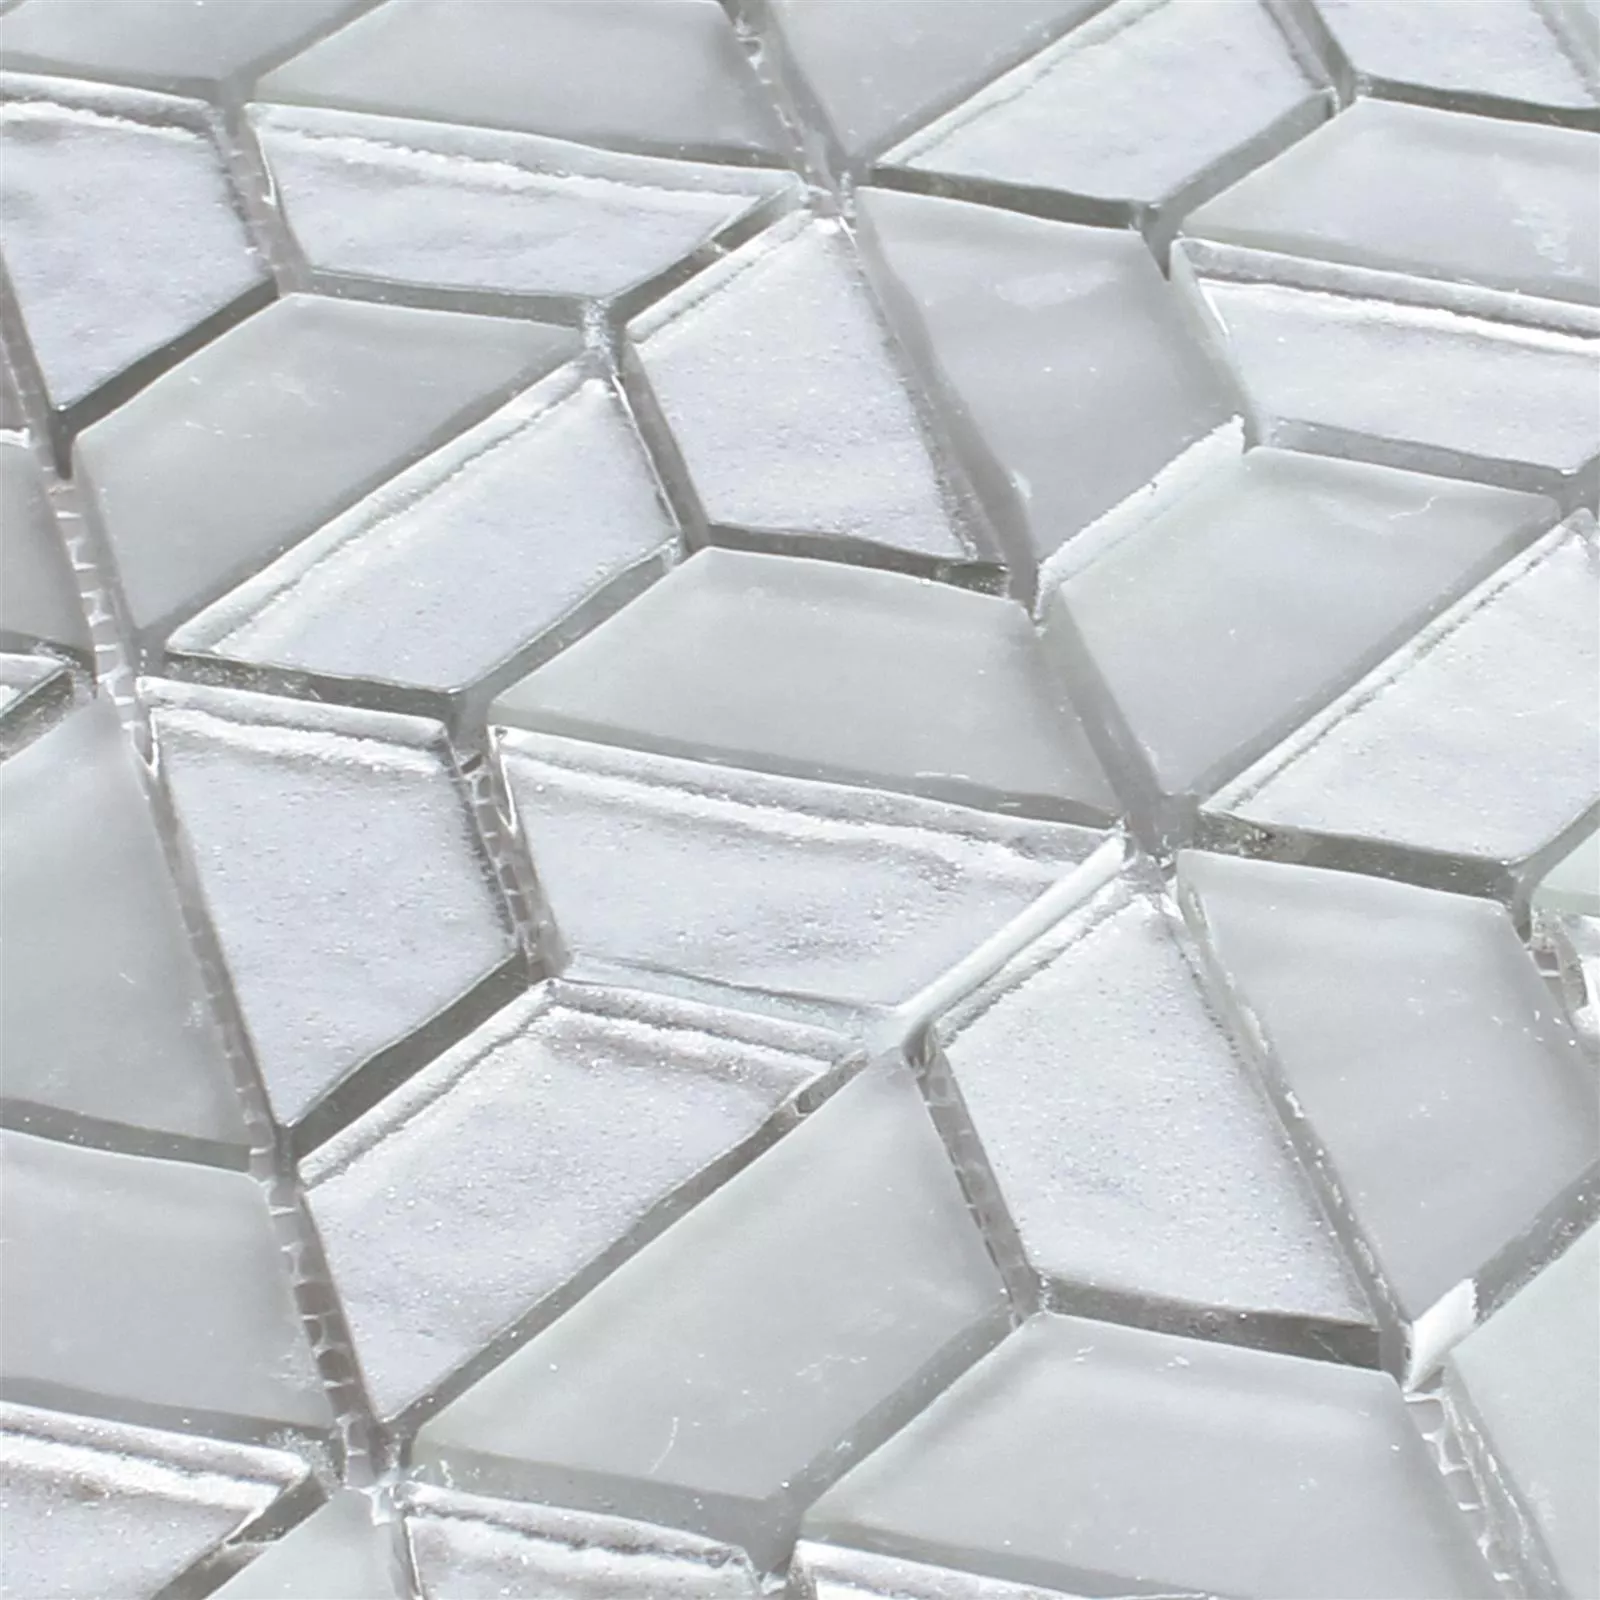 Glasmosaik Fliesen Alaaddin Hexagon Silber